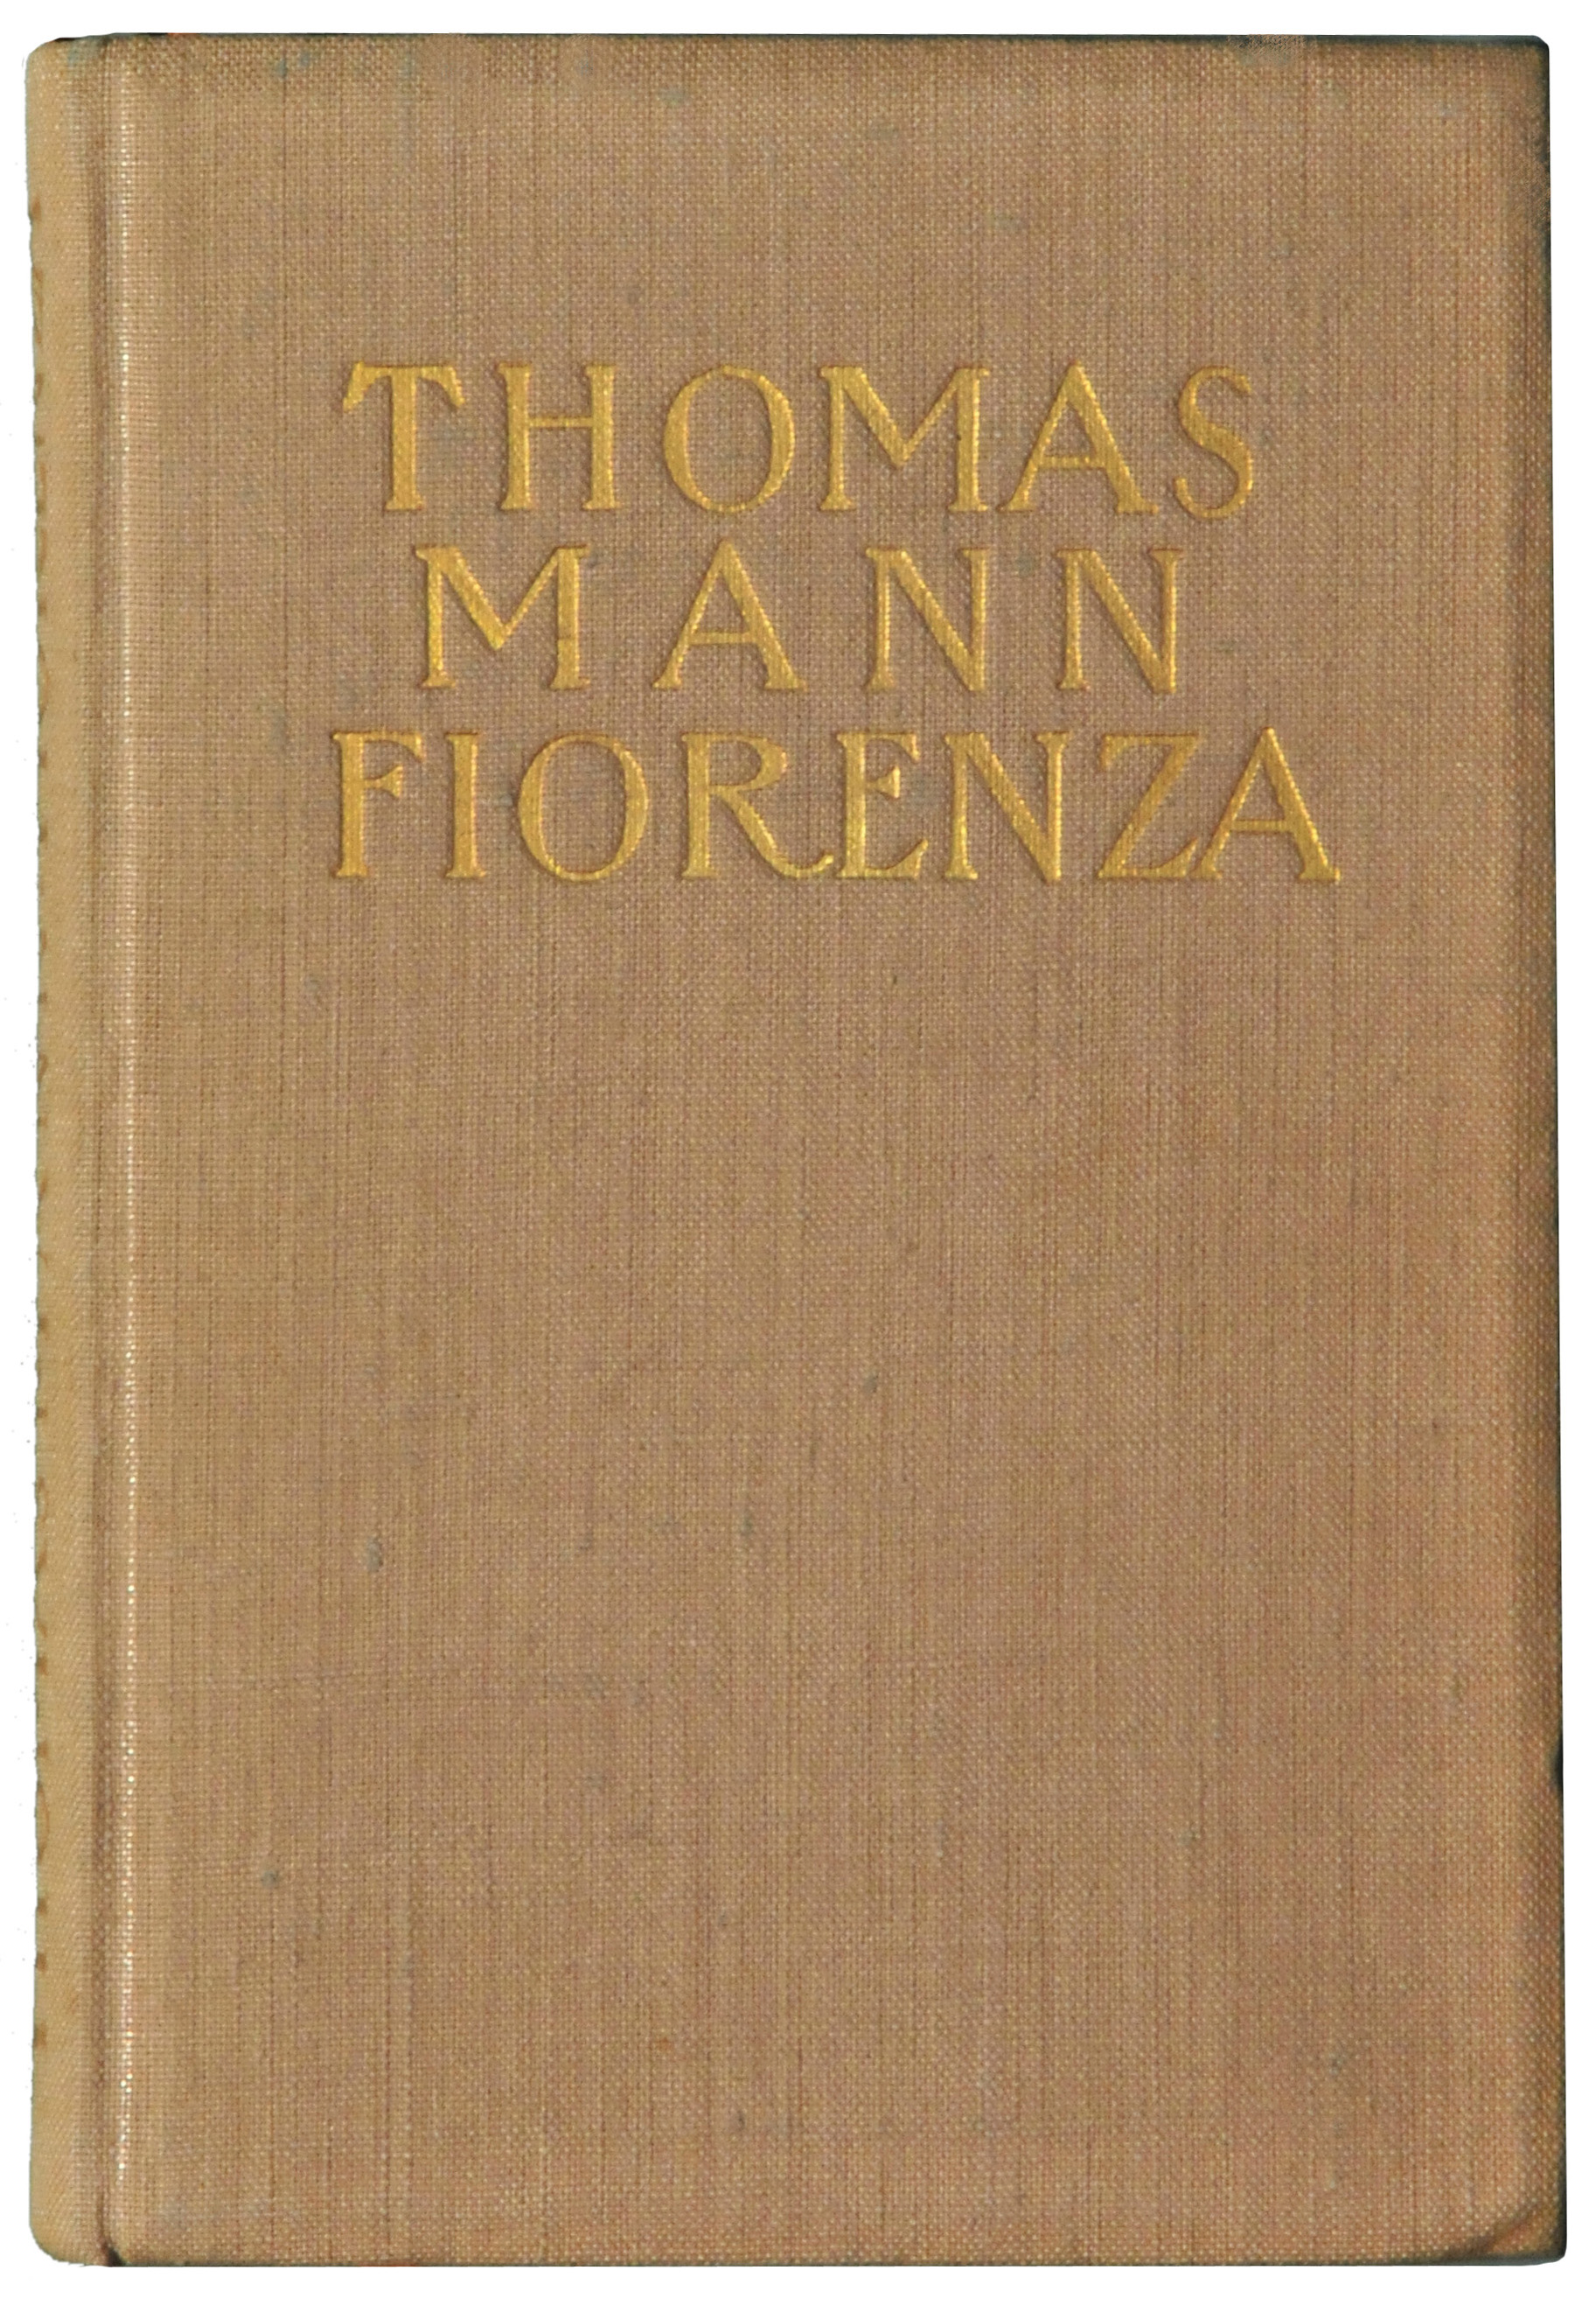 -6.1- Thomas Mann Fiorenza 1906